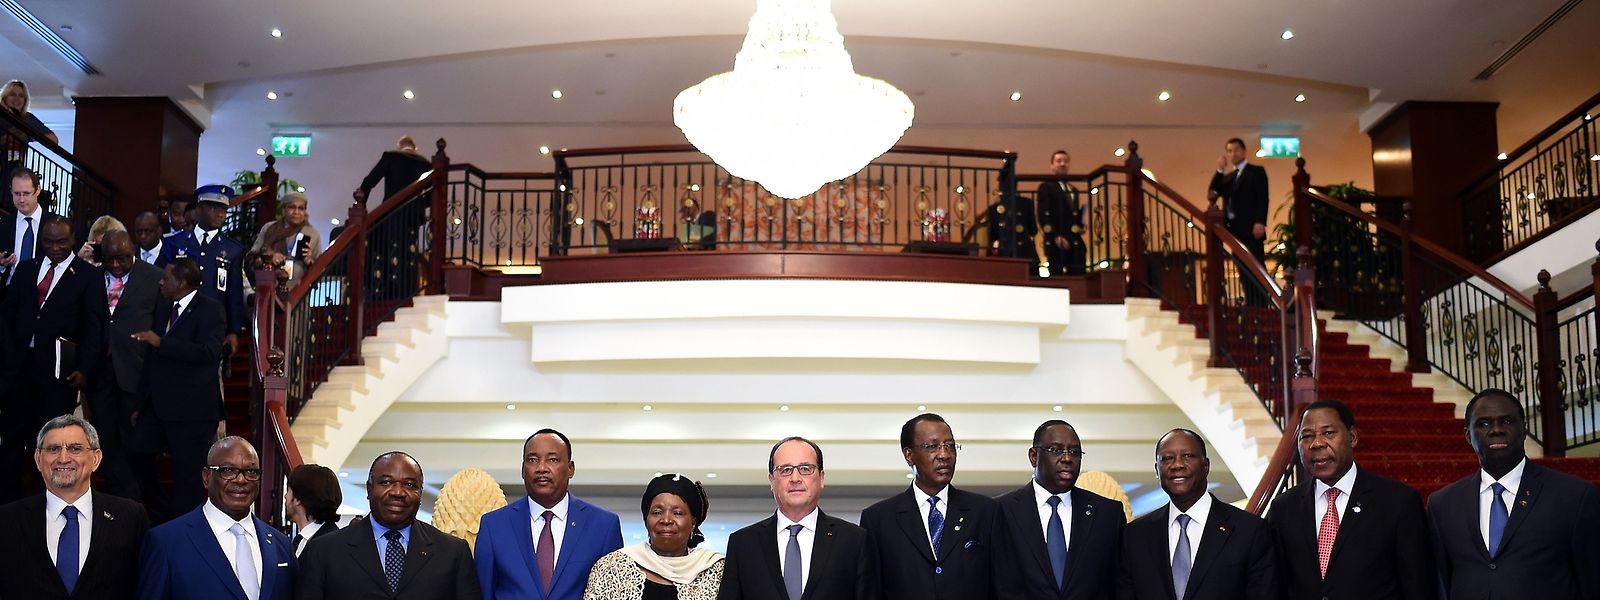 Die Vertreter der afrikanischen Staaten beim EU-Gipfel in Malta.